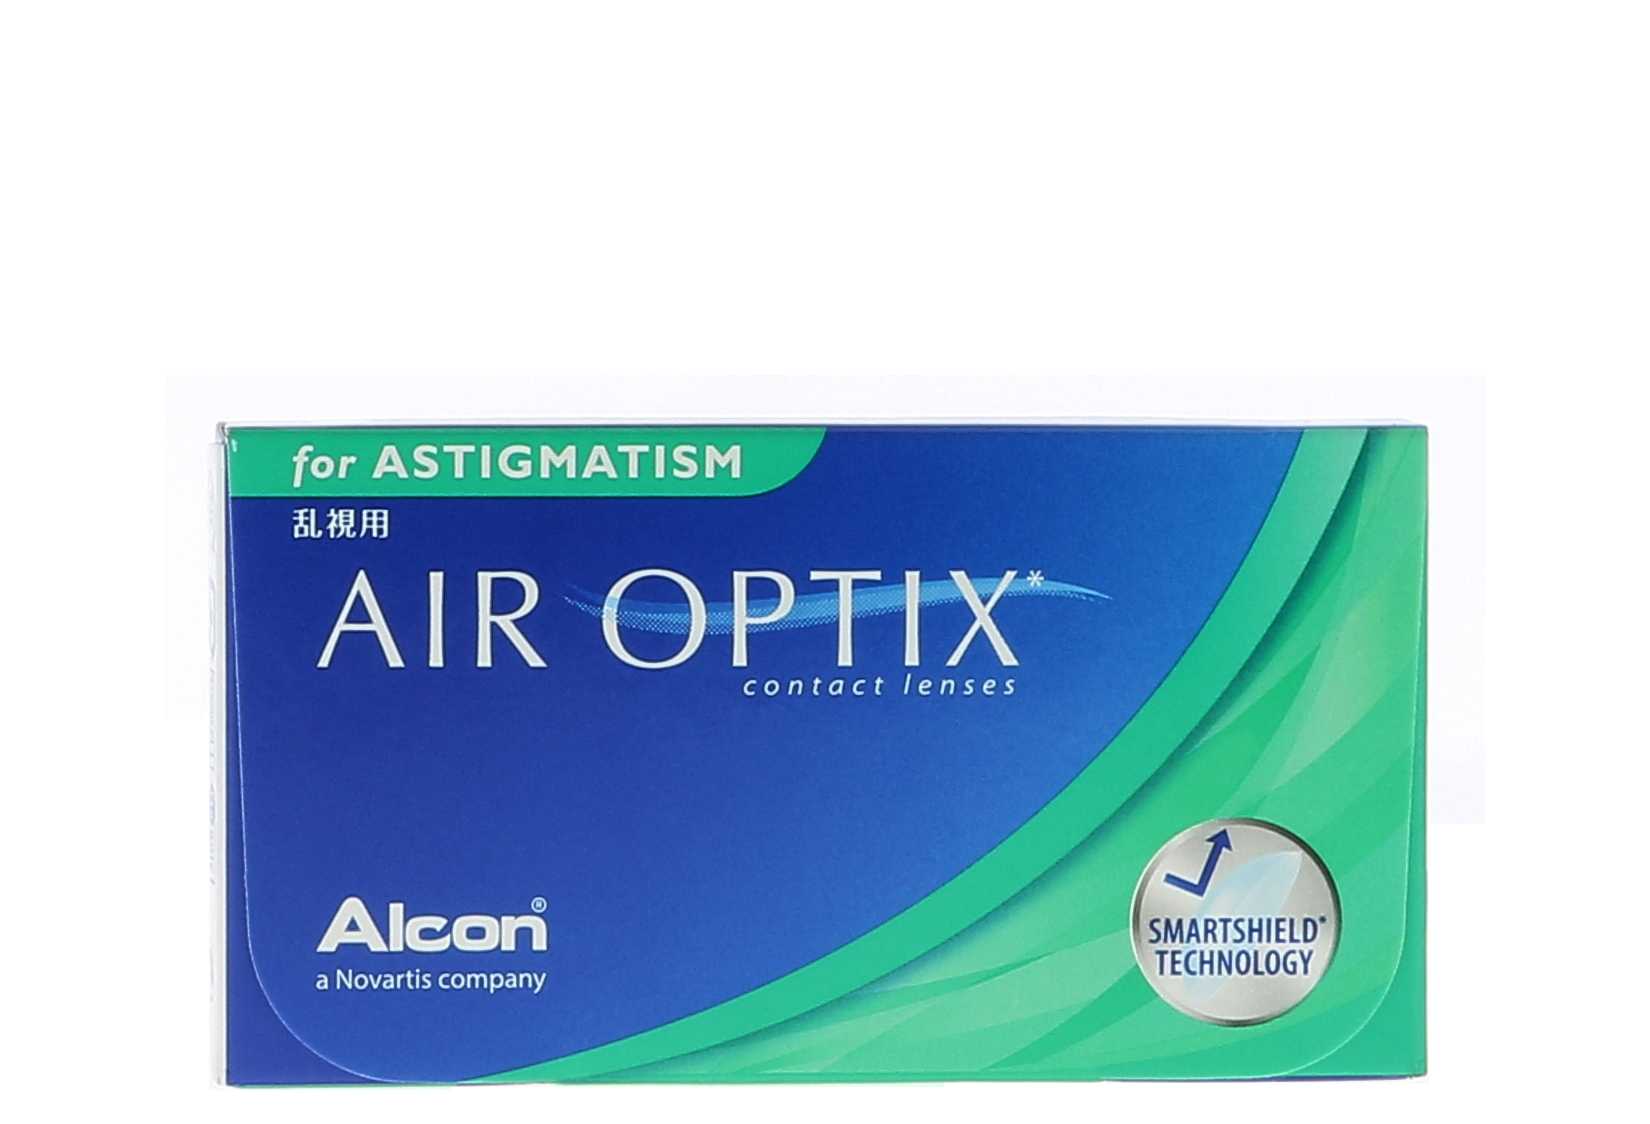 6-lentillas-alcon-air-optix-aqua-astigmatism-mensual-t-rico